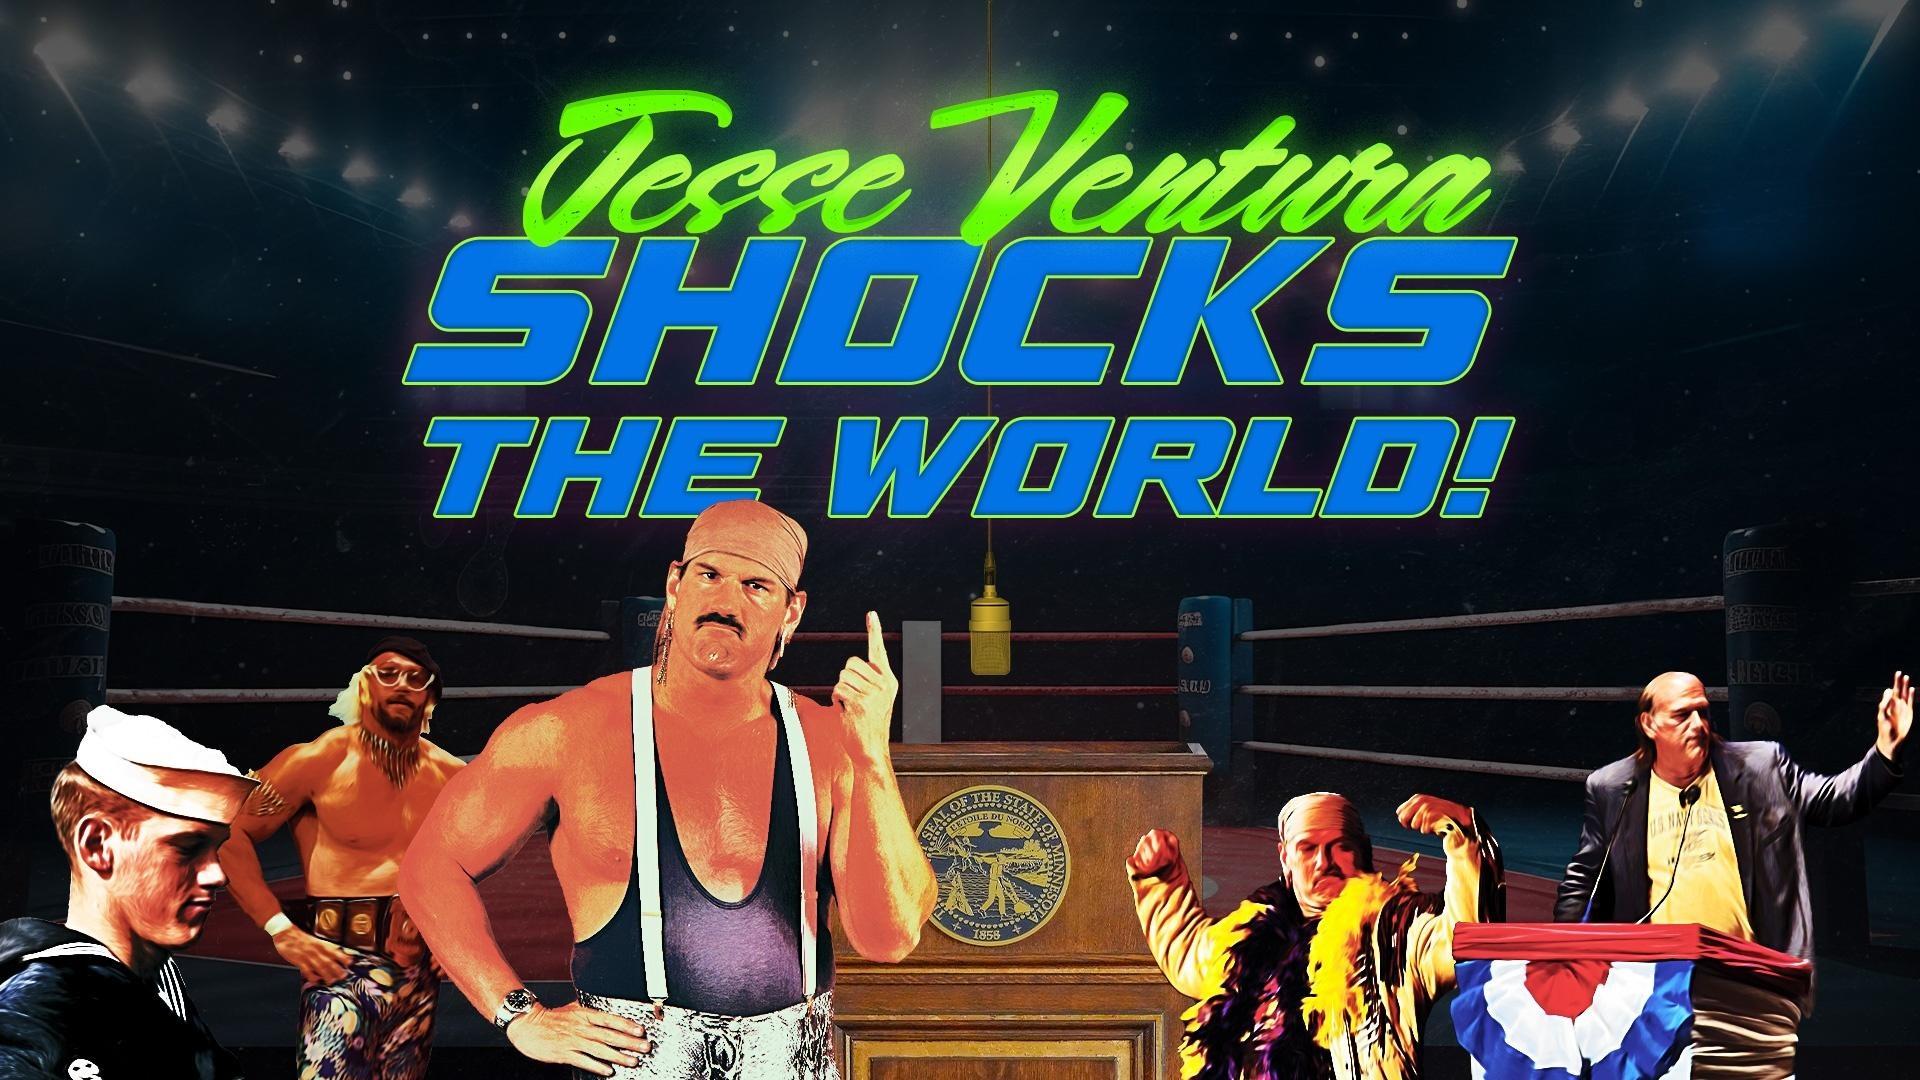 Jesse Ventura Shocks the World